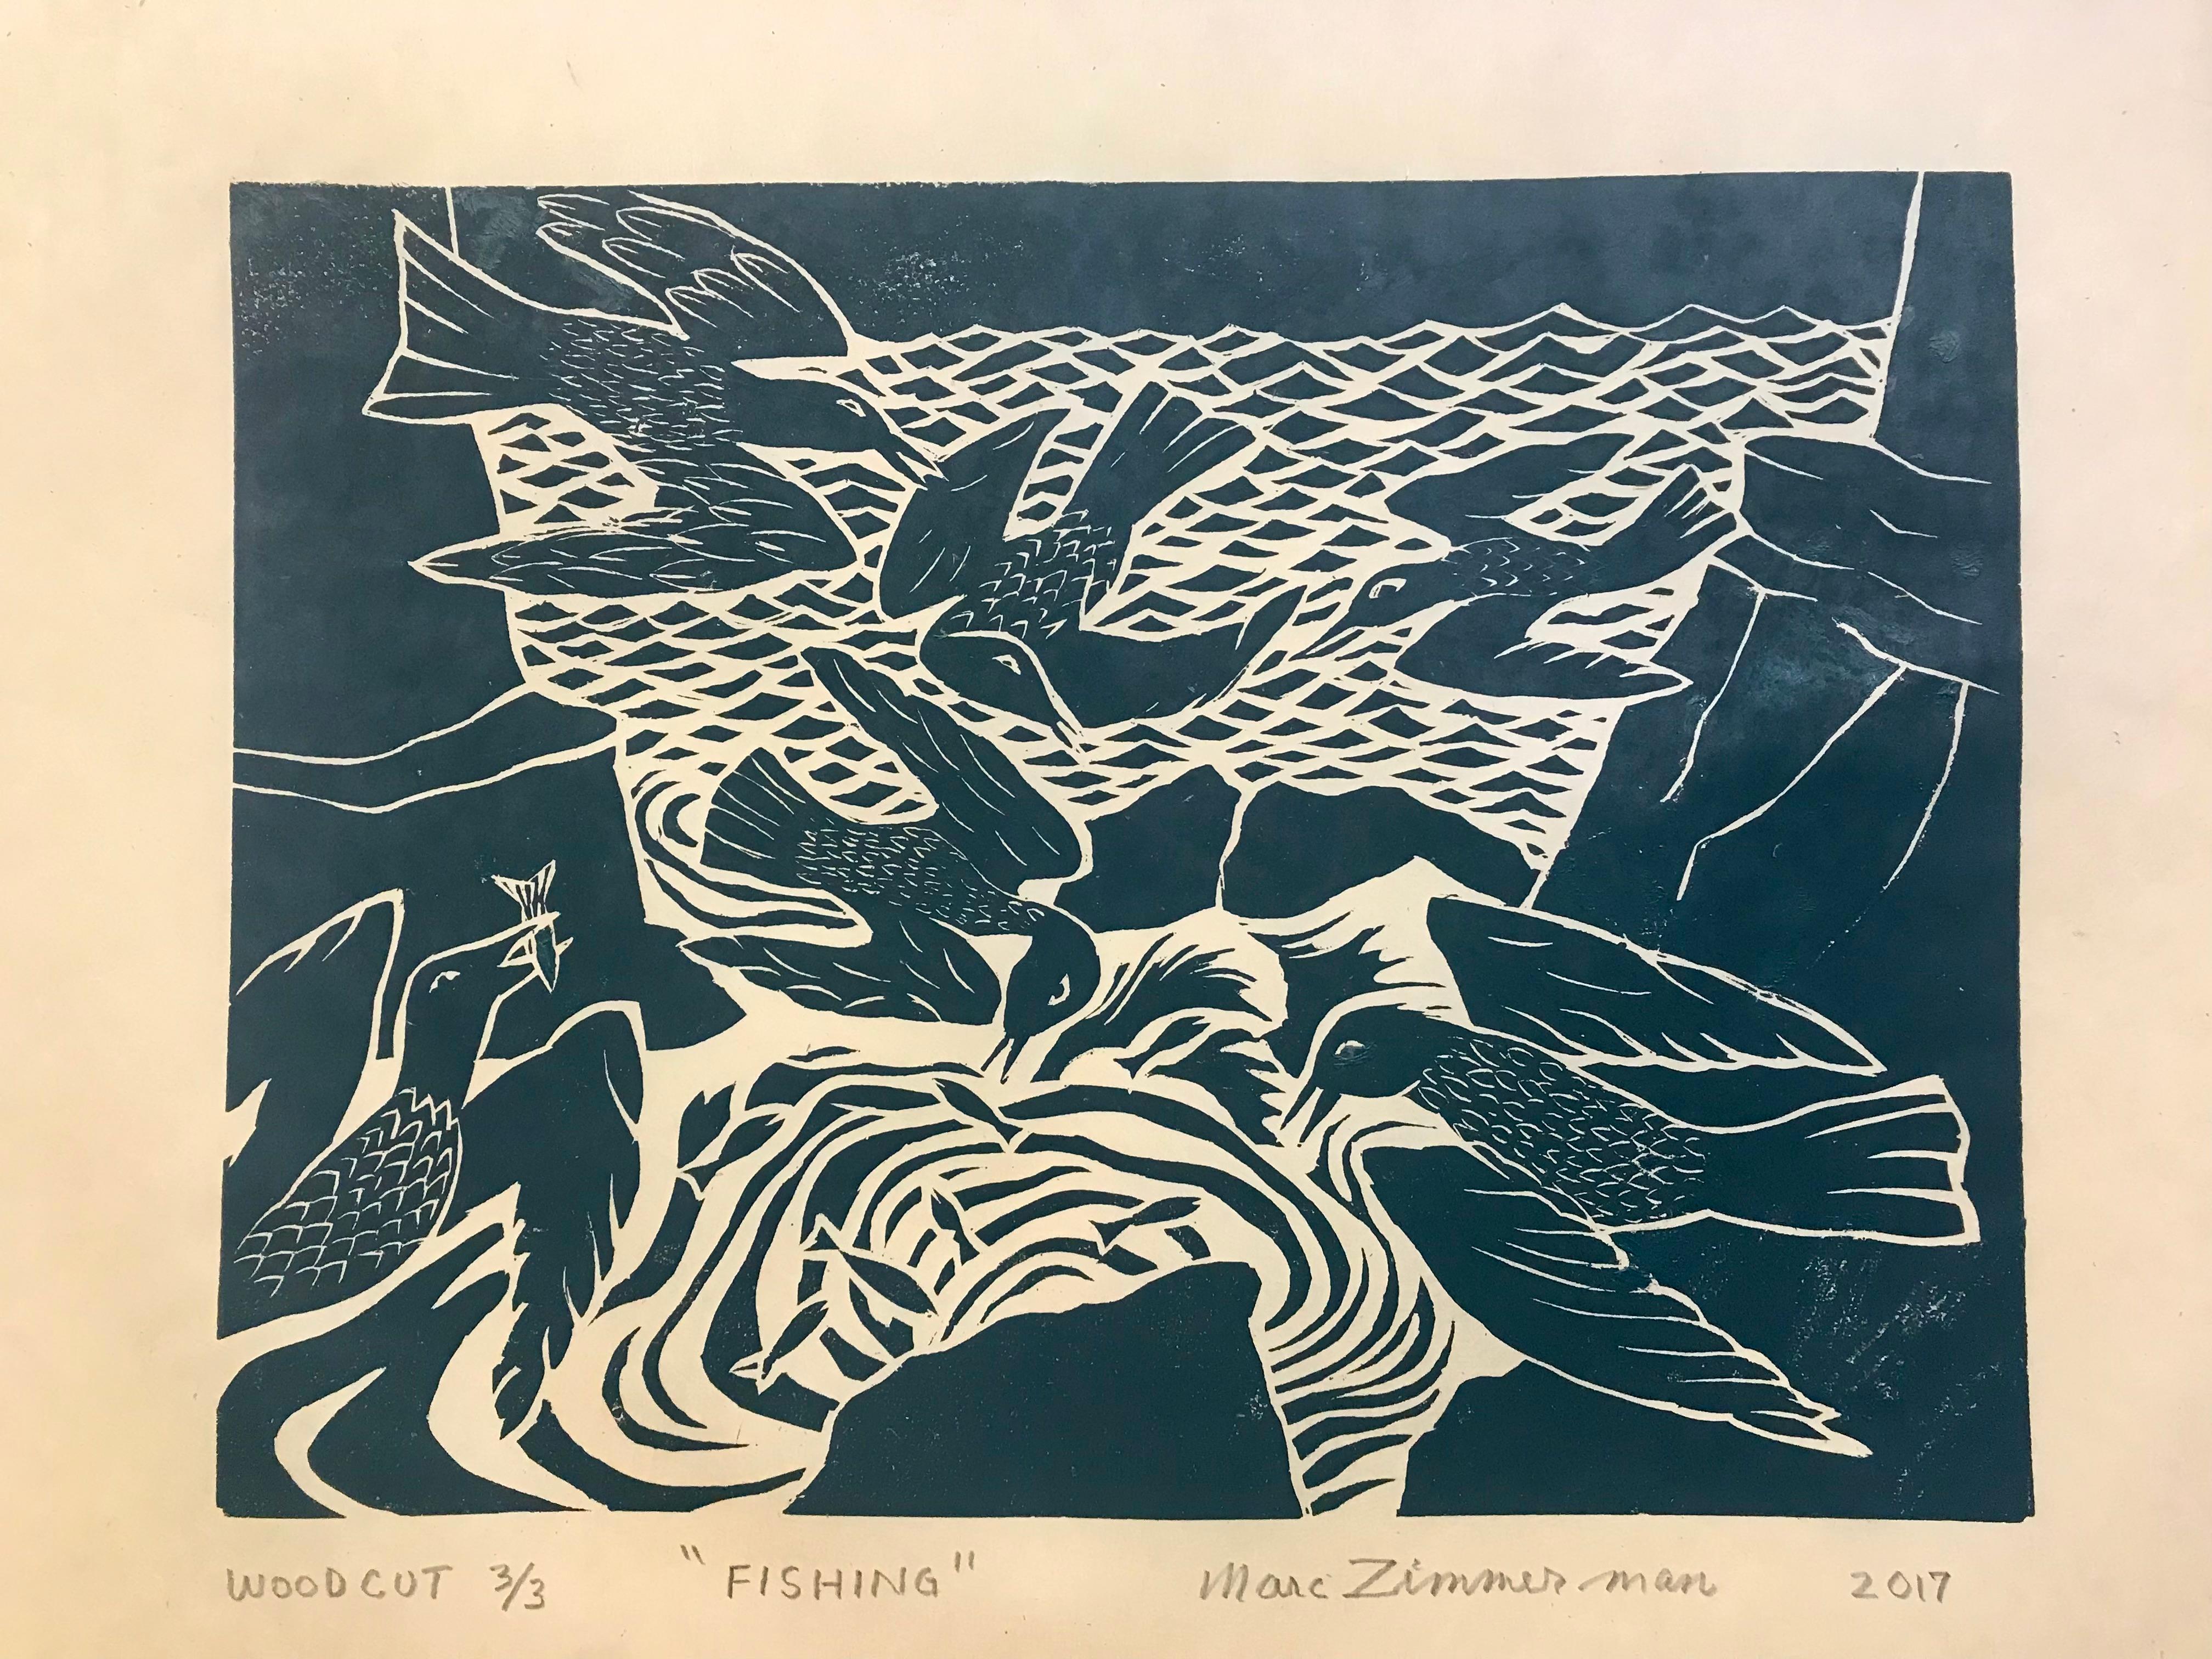 Schwarze Tinte auf chamoisfarbenem japanischem Reispapier. Dieses Bild entstand bei der Beobachtung von Seevögeln auf Kauai, Hawaii, die entlang der Klippen an der Nordküste aufsteigen und im Meer nach Fischen tauchen.

Fischen – Tierdruck –